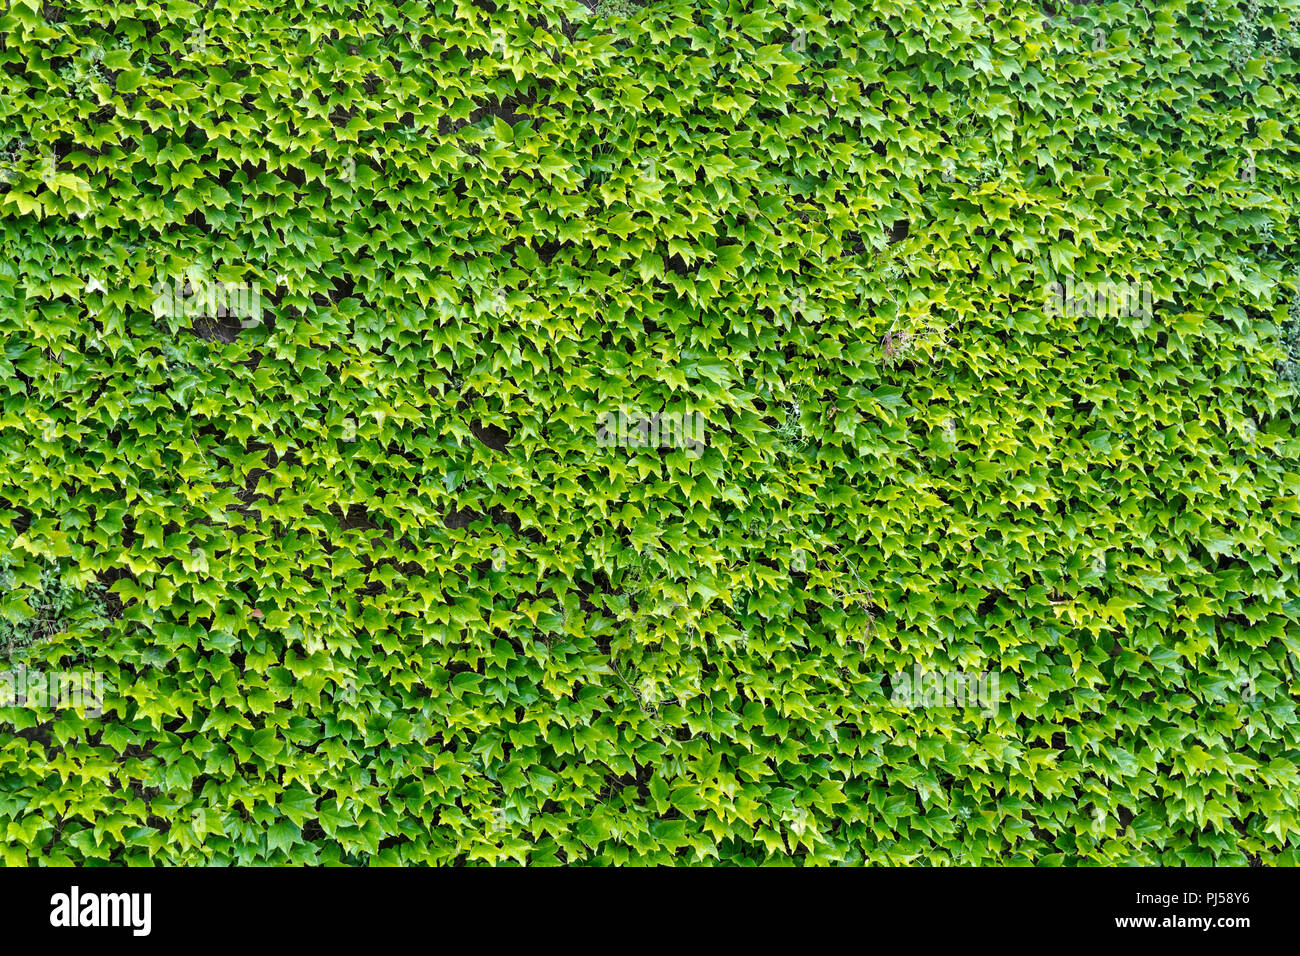 Hedera vert (Ivy) quitte l'arrière-plan. Feuille verte naturelle, mur texture background. Feuilles vert clair de lierre sur le mur. Banque D'Images